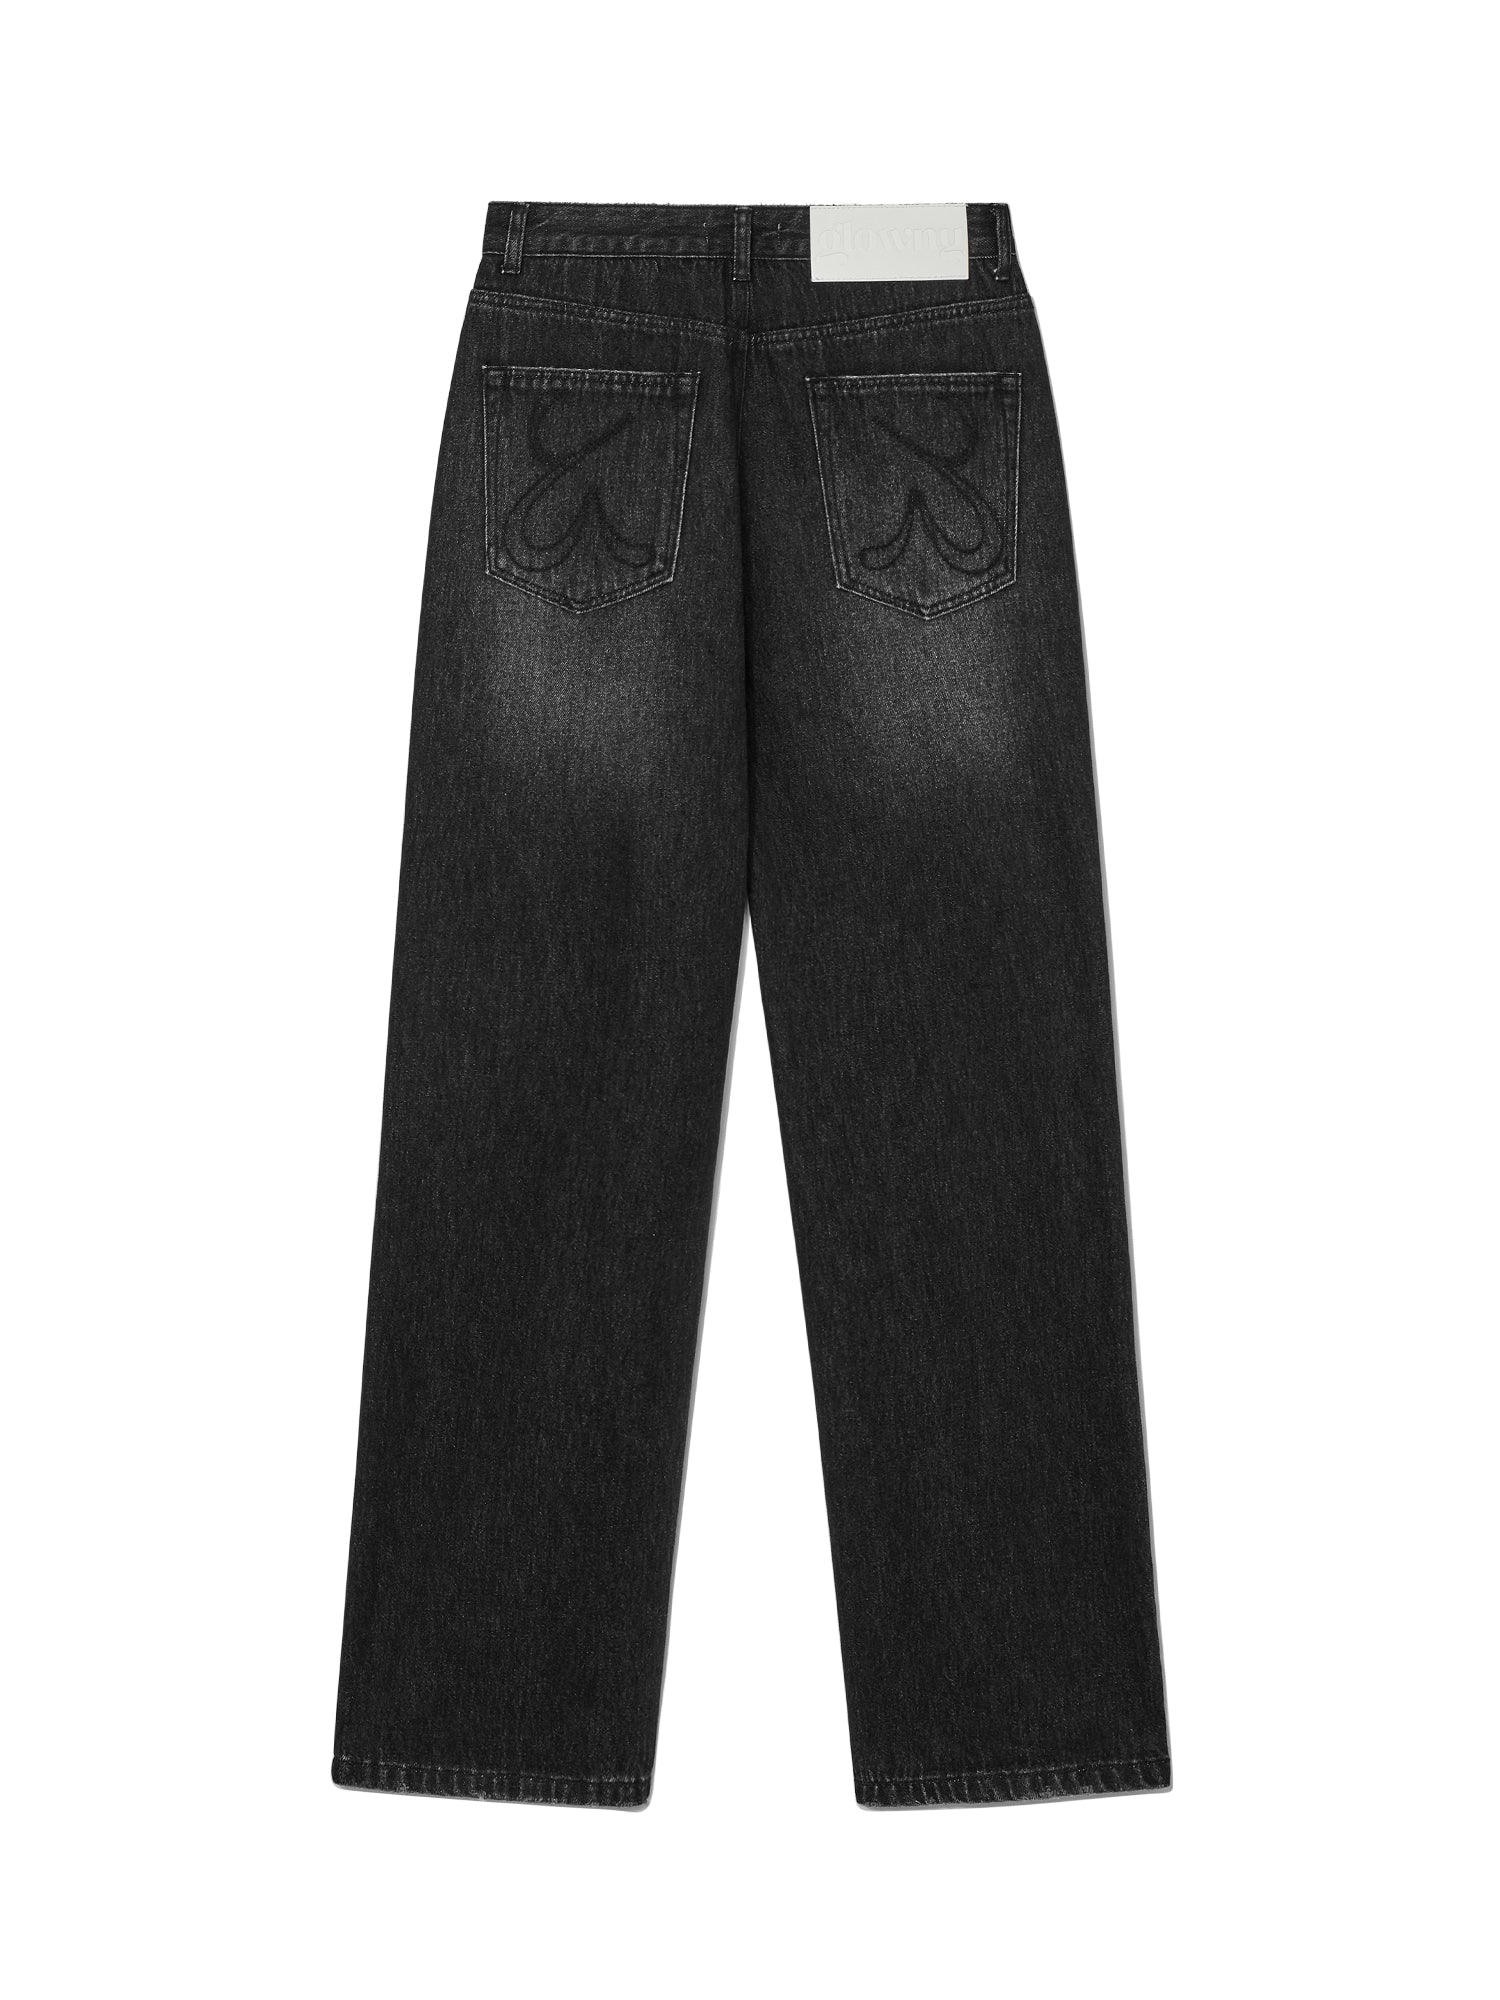 Denim & Supply Ralph Lauren Slim Blue Jeans Men's 36x32 Discontinued | eBay